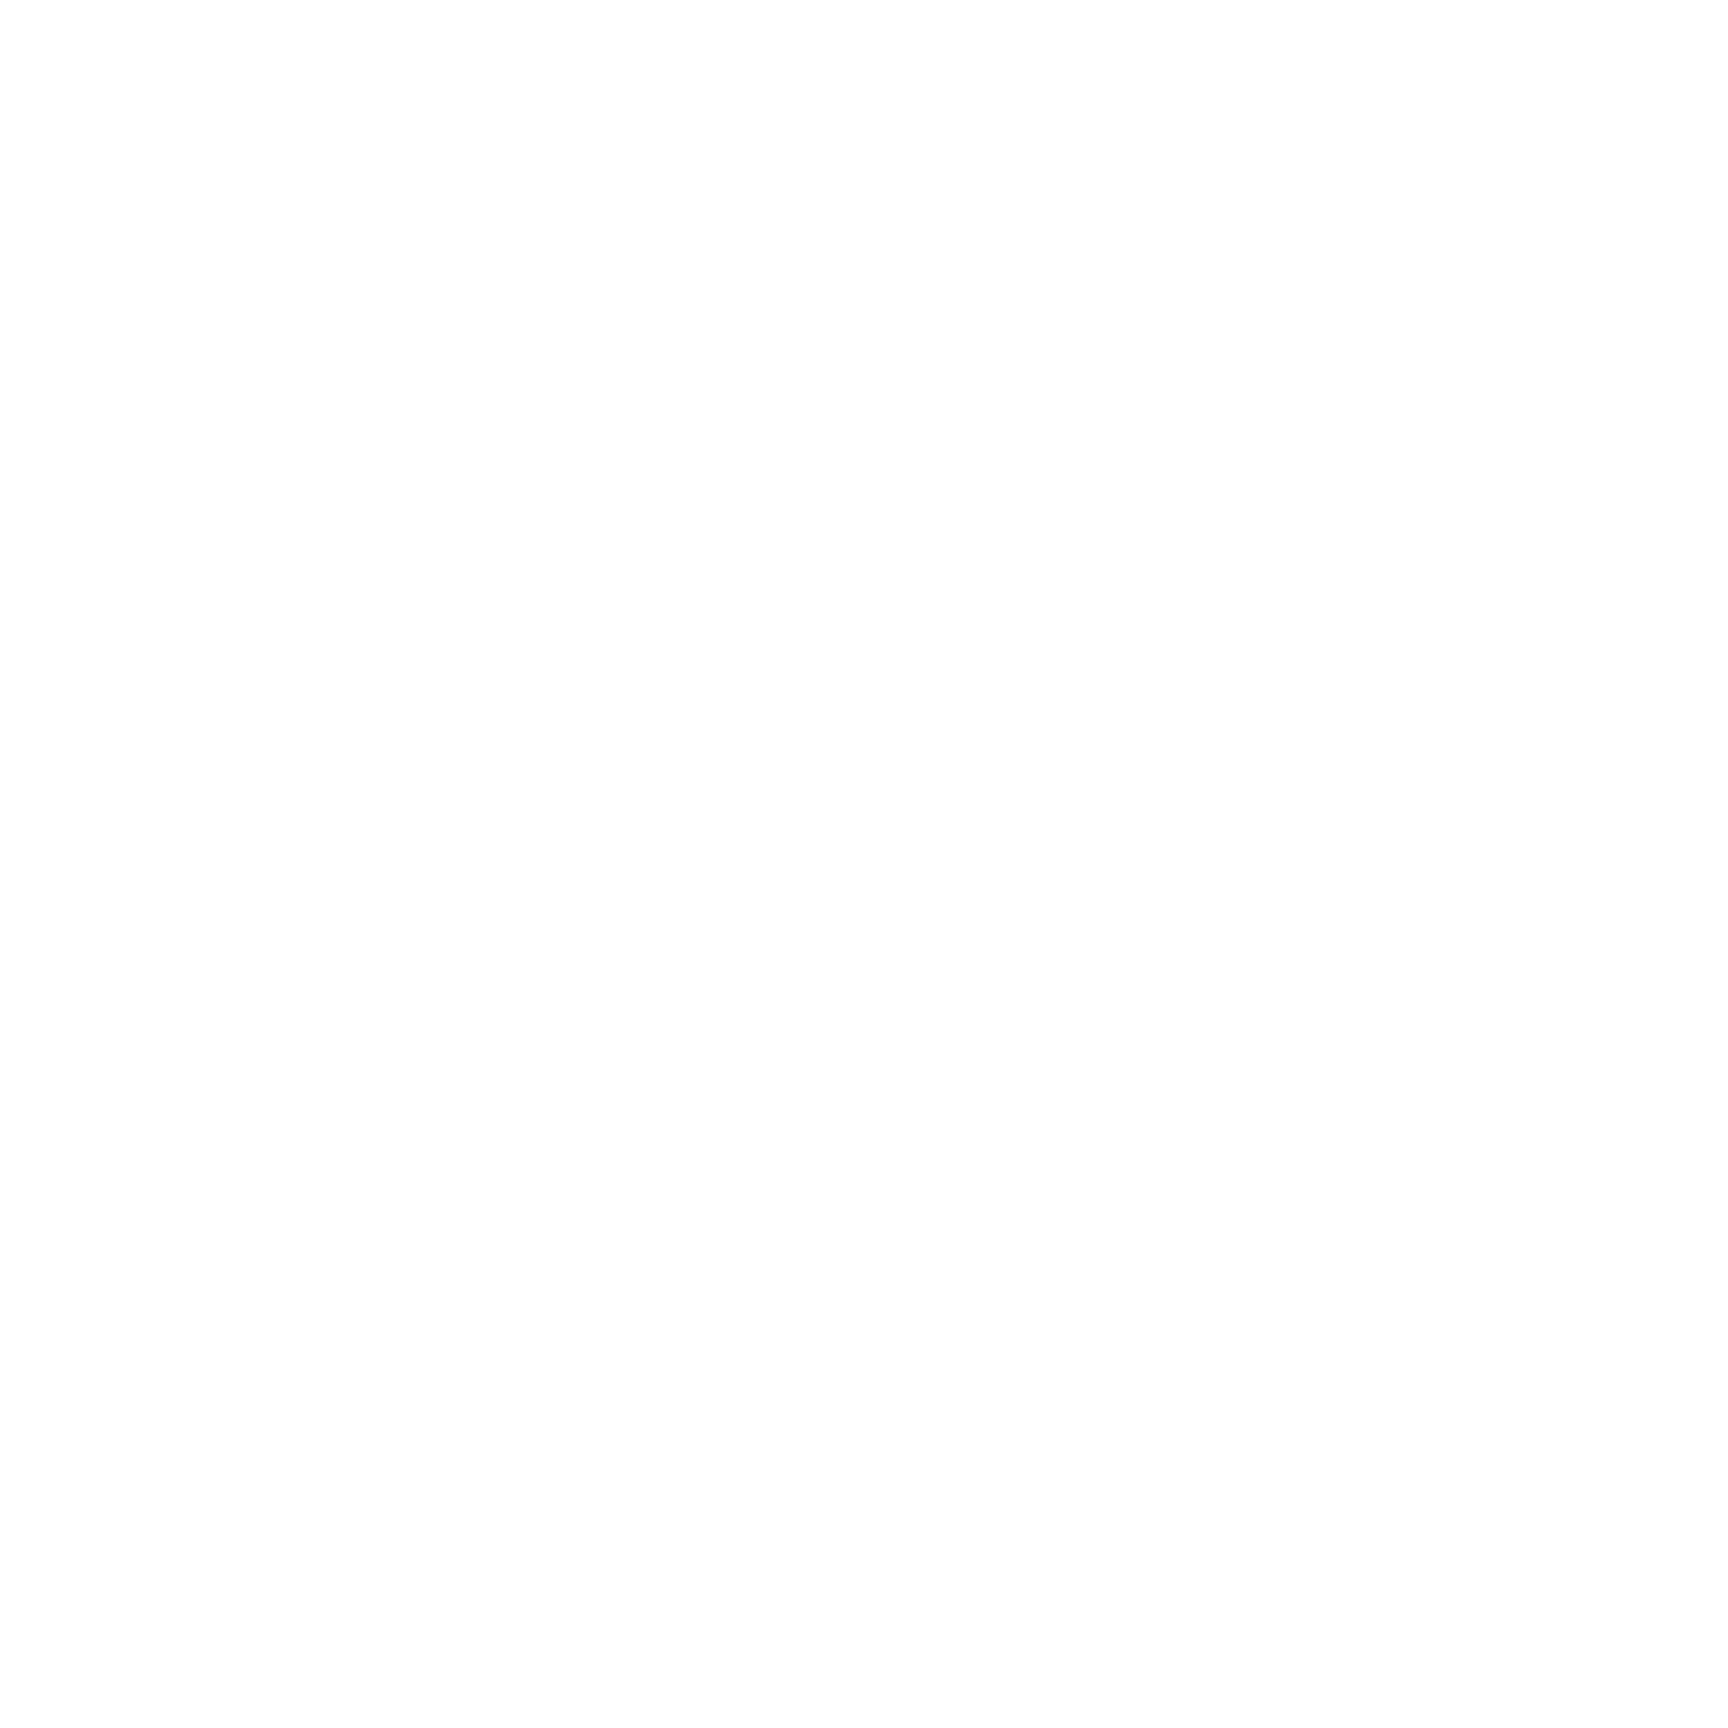 Affinity-Black_ALP_Seal_Image_png-01